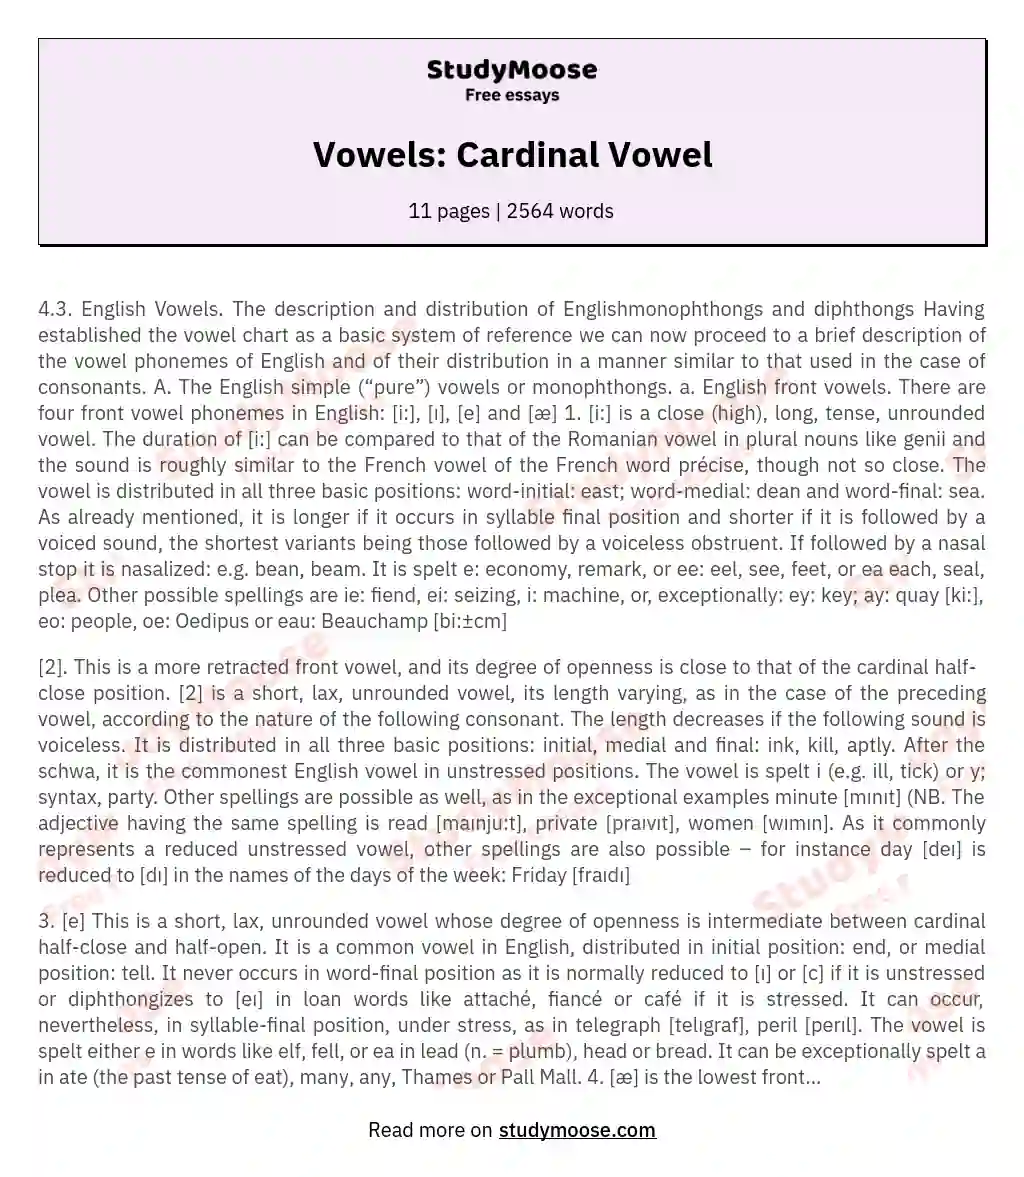 Vowels: Cardinal Vowel